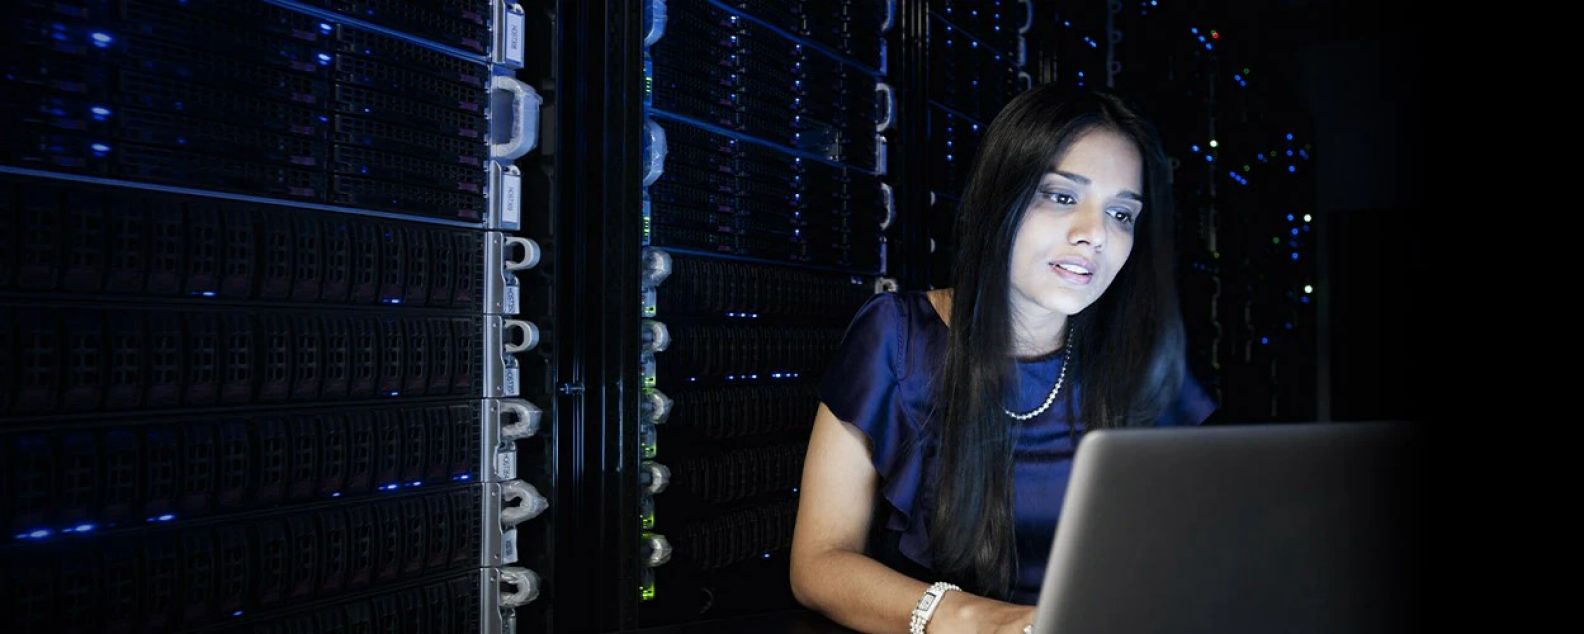 Una mujer trabaja concentrada frente al monitor de una computadora portátil